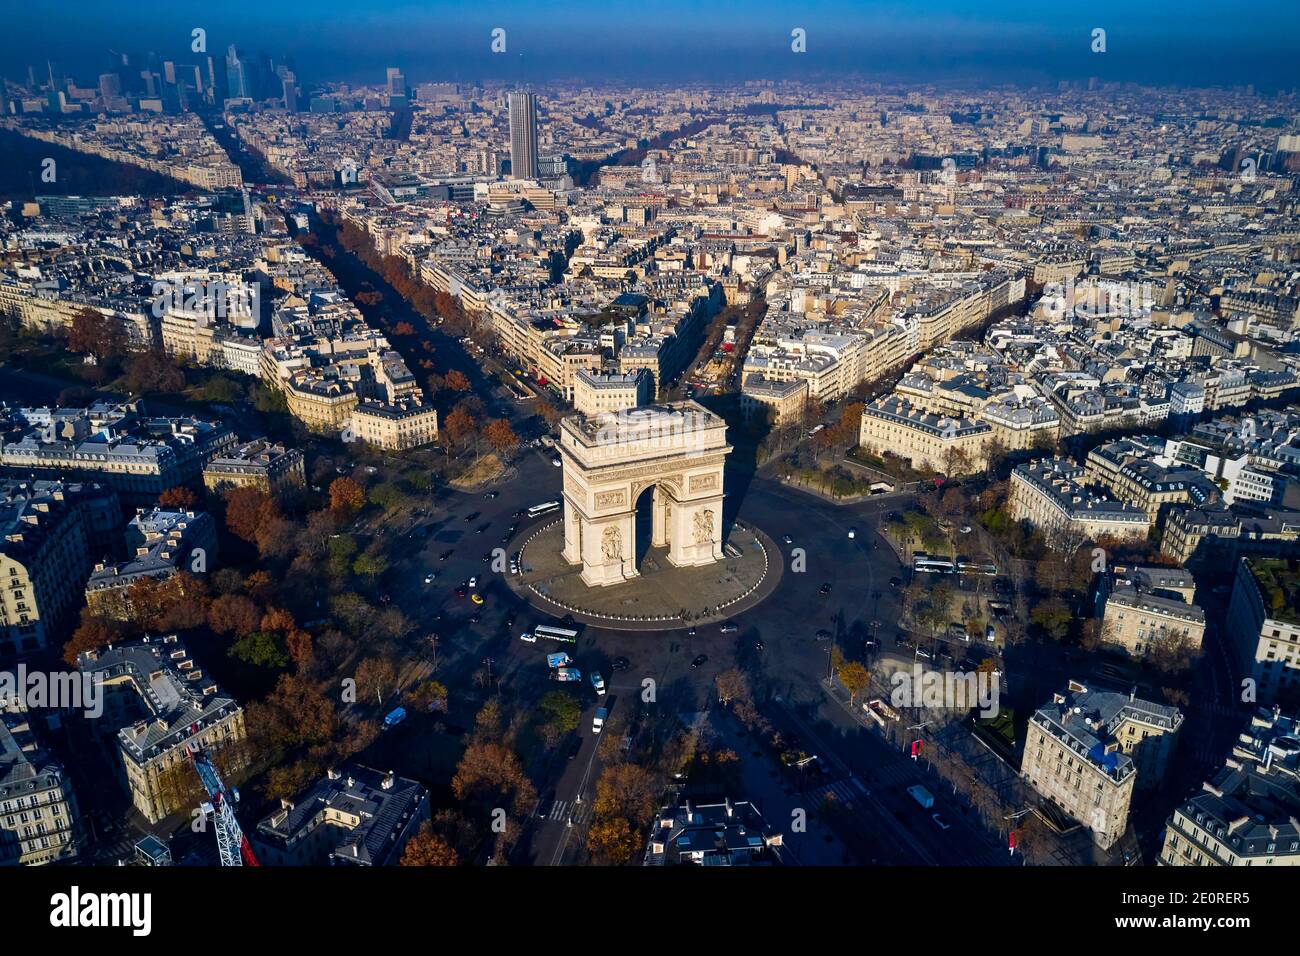 France, Paris (75), place Charles de Gaulle or de l'Etoile, and the Arc de Triomphe Stock Photo